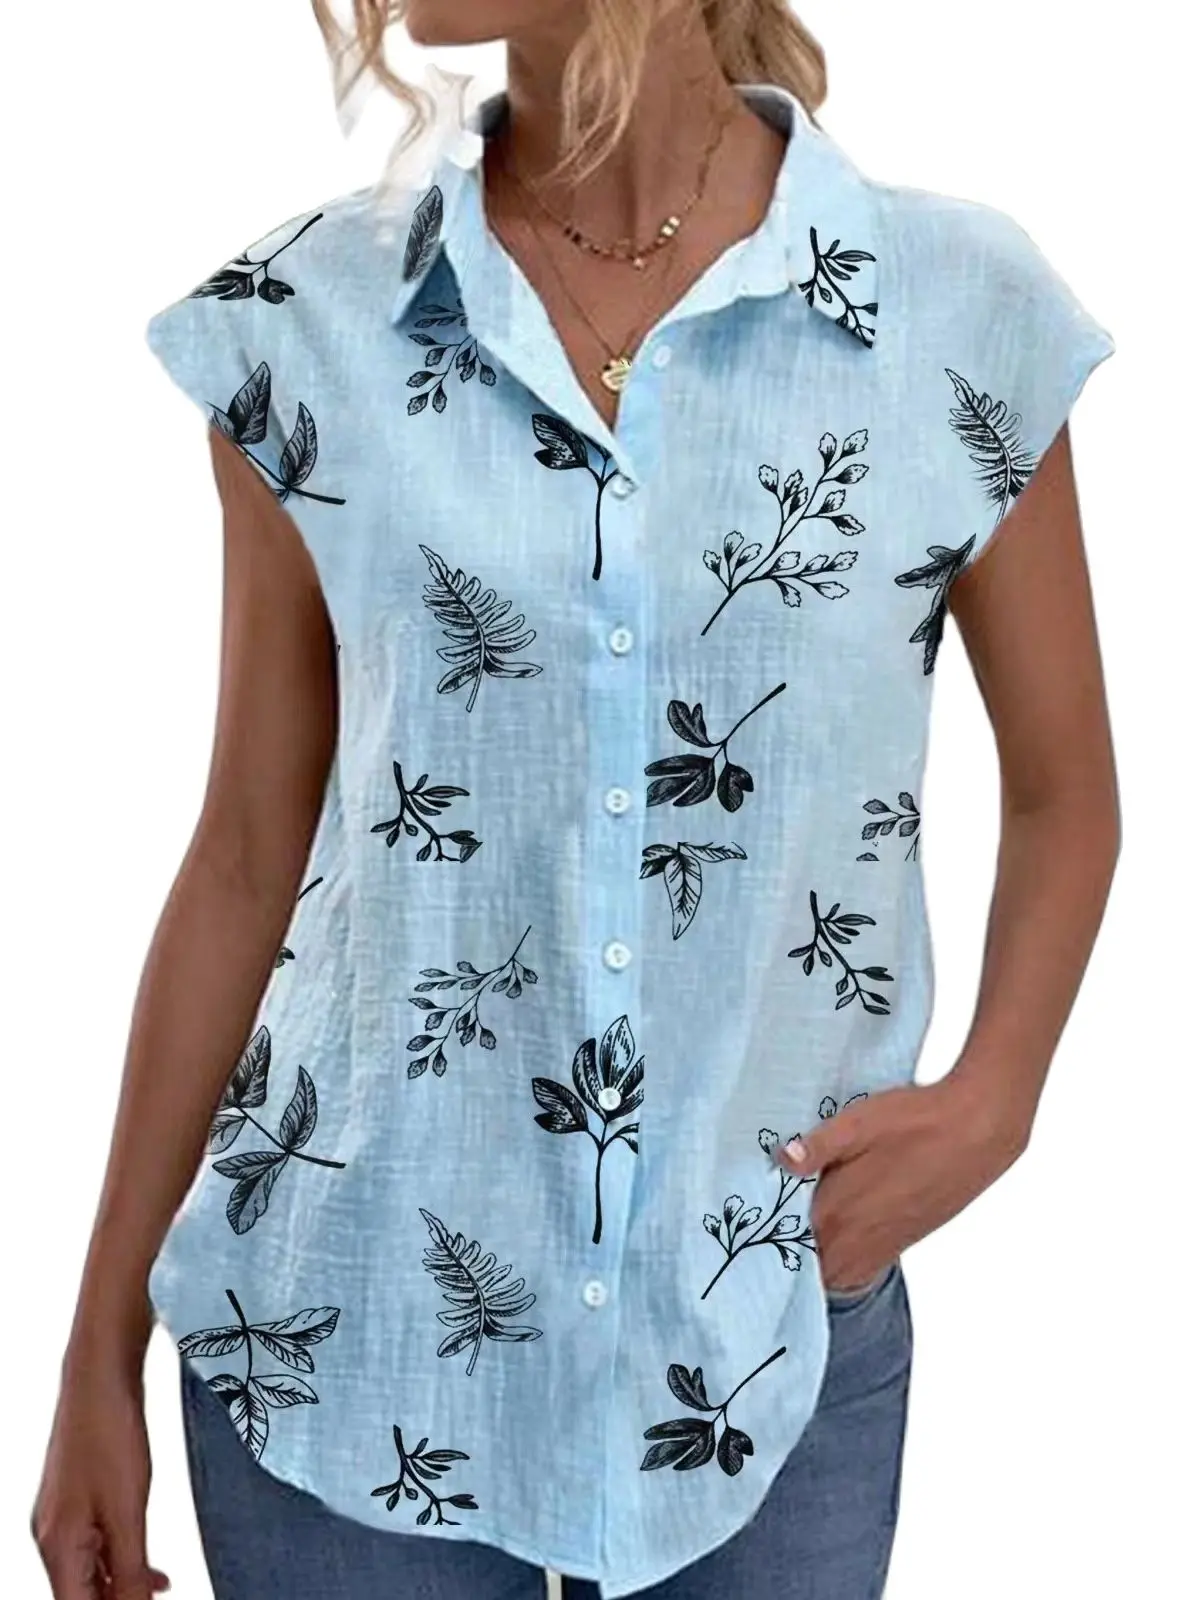 Women's blouse 2023 new women's print shirt fashion casual lapel shirt loose button shirt woman